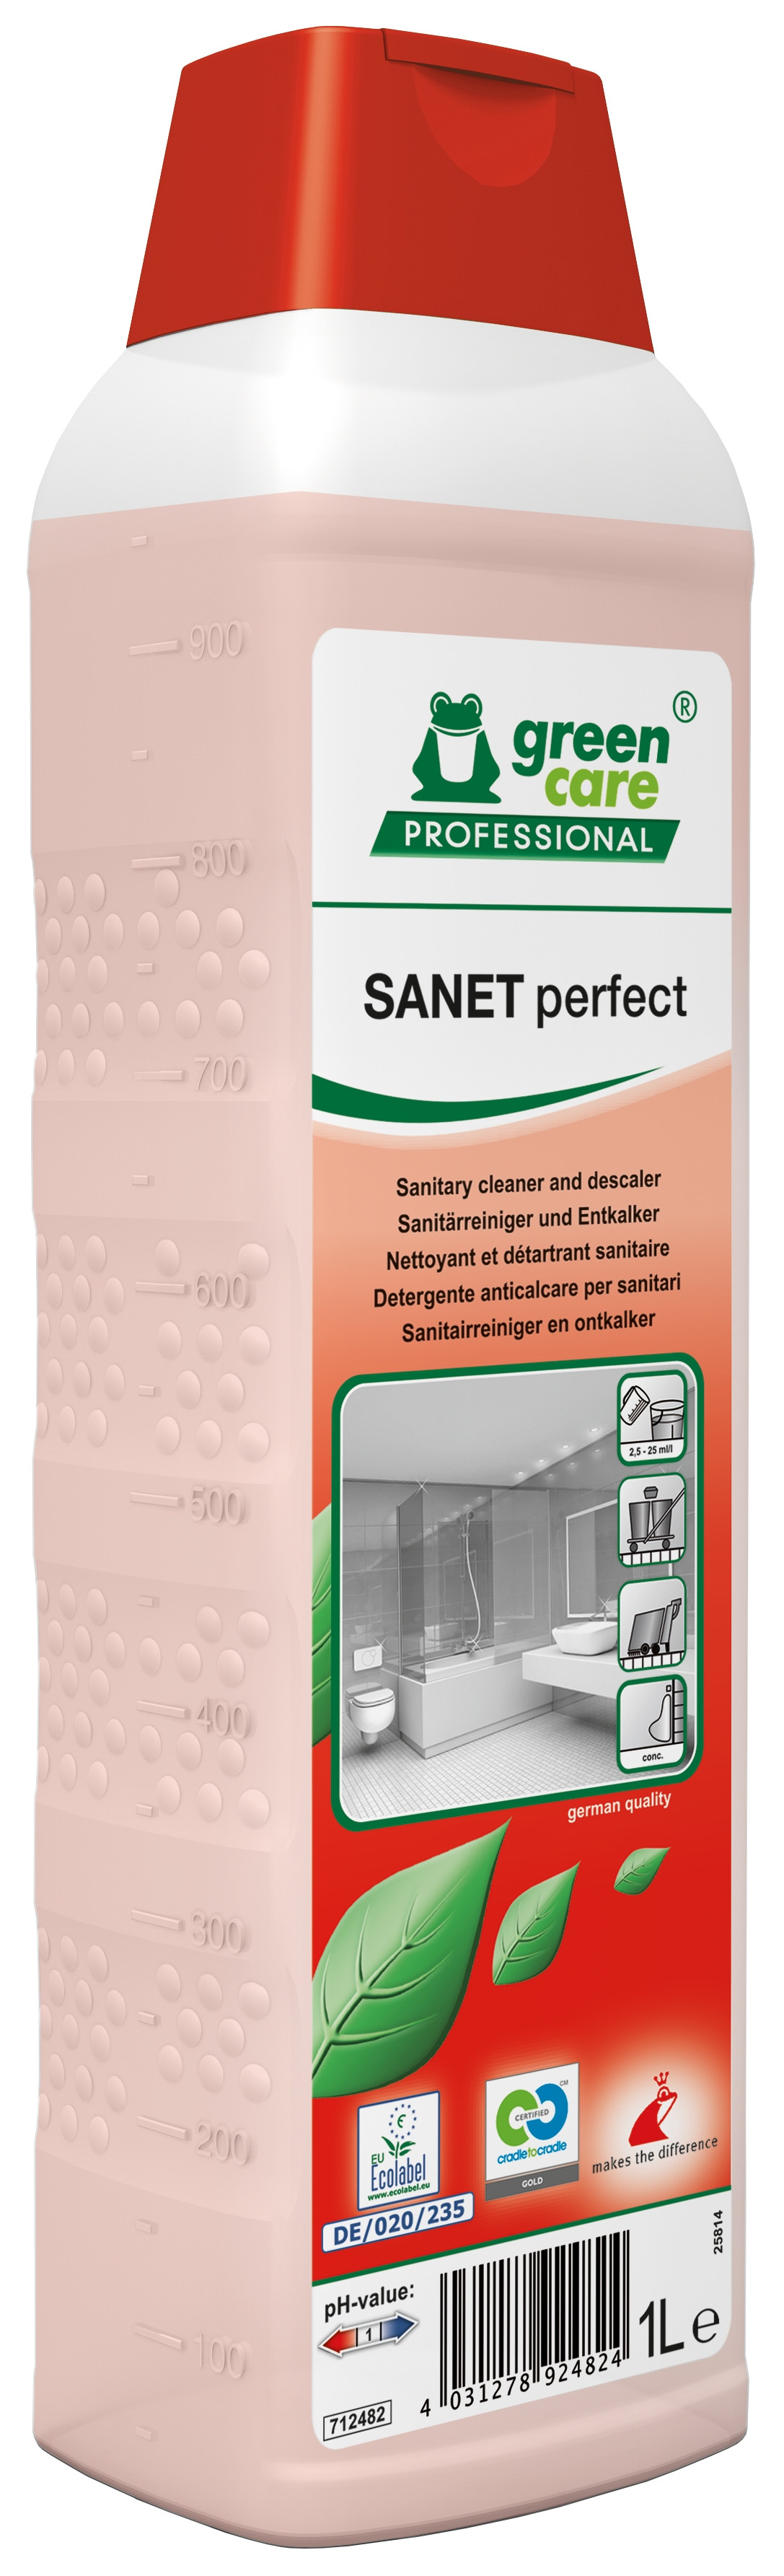 Green Care Prof Sanet Perfect 10 x 1 l Kalkfjerner med parfume (712482)